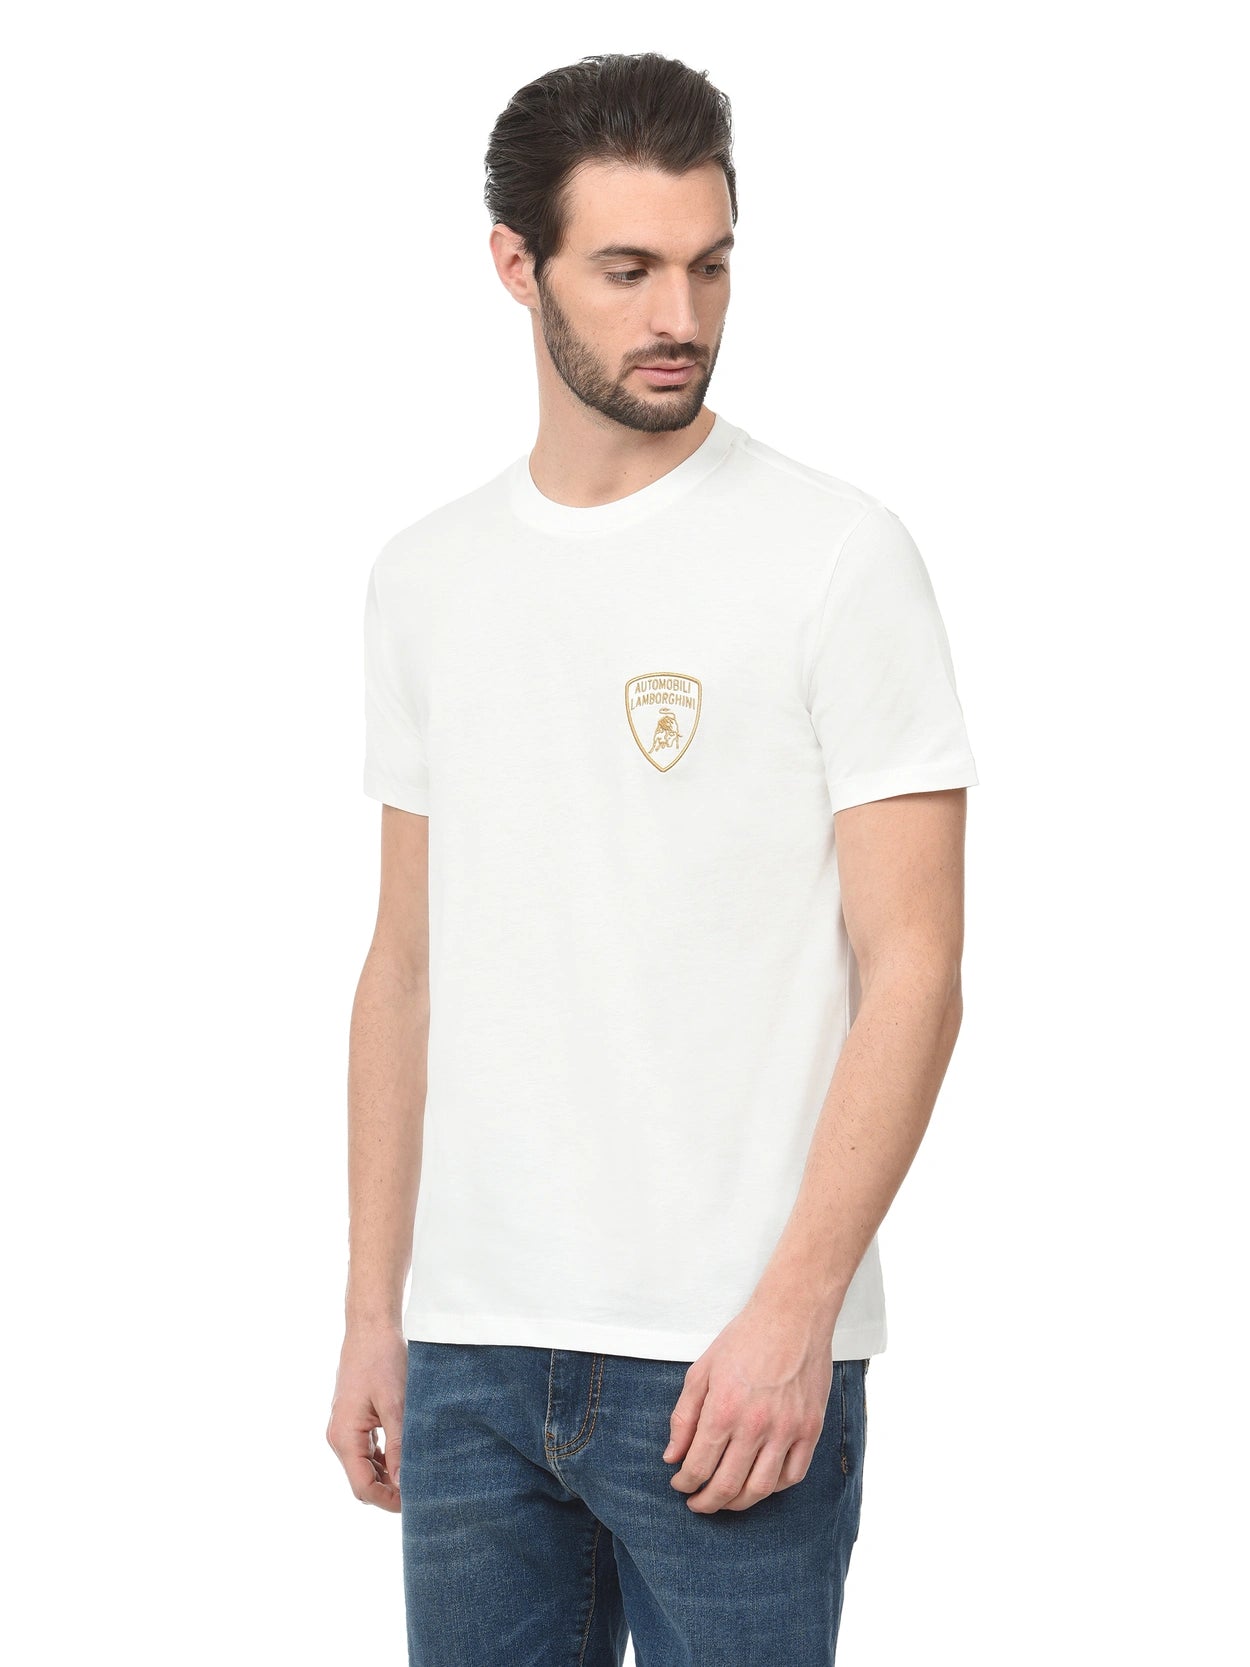 T-Shirt Automobili Lamborghini in Cotone / Bianco - Ideal Moda